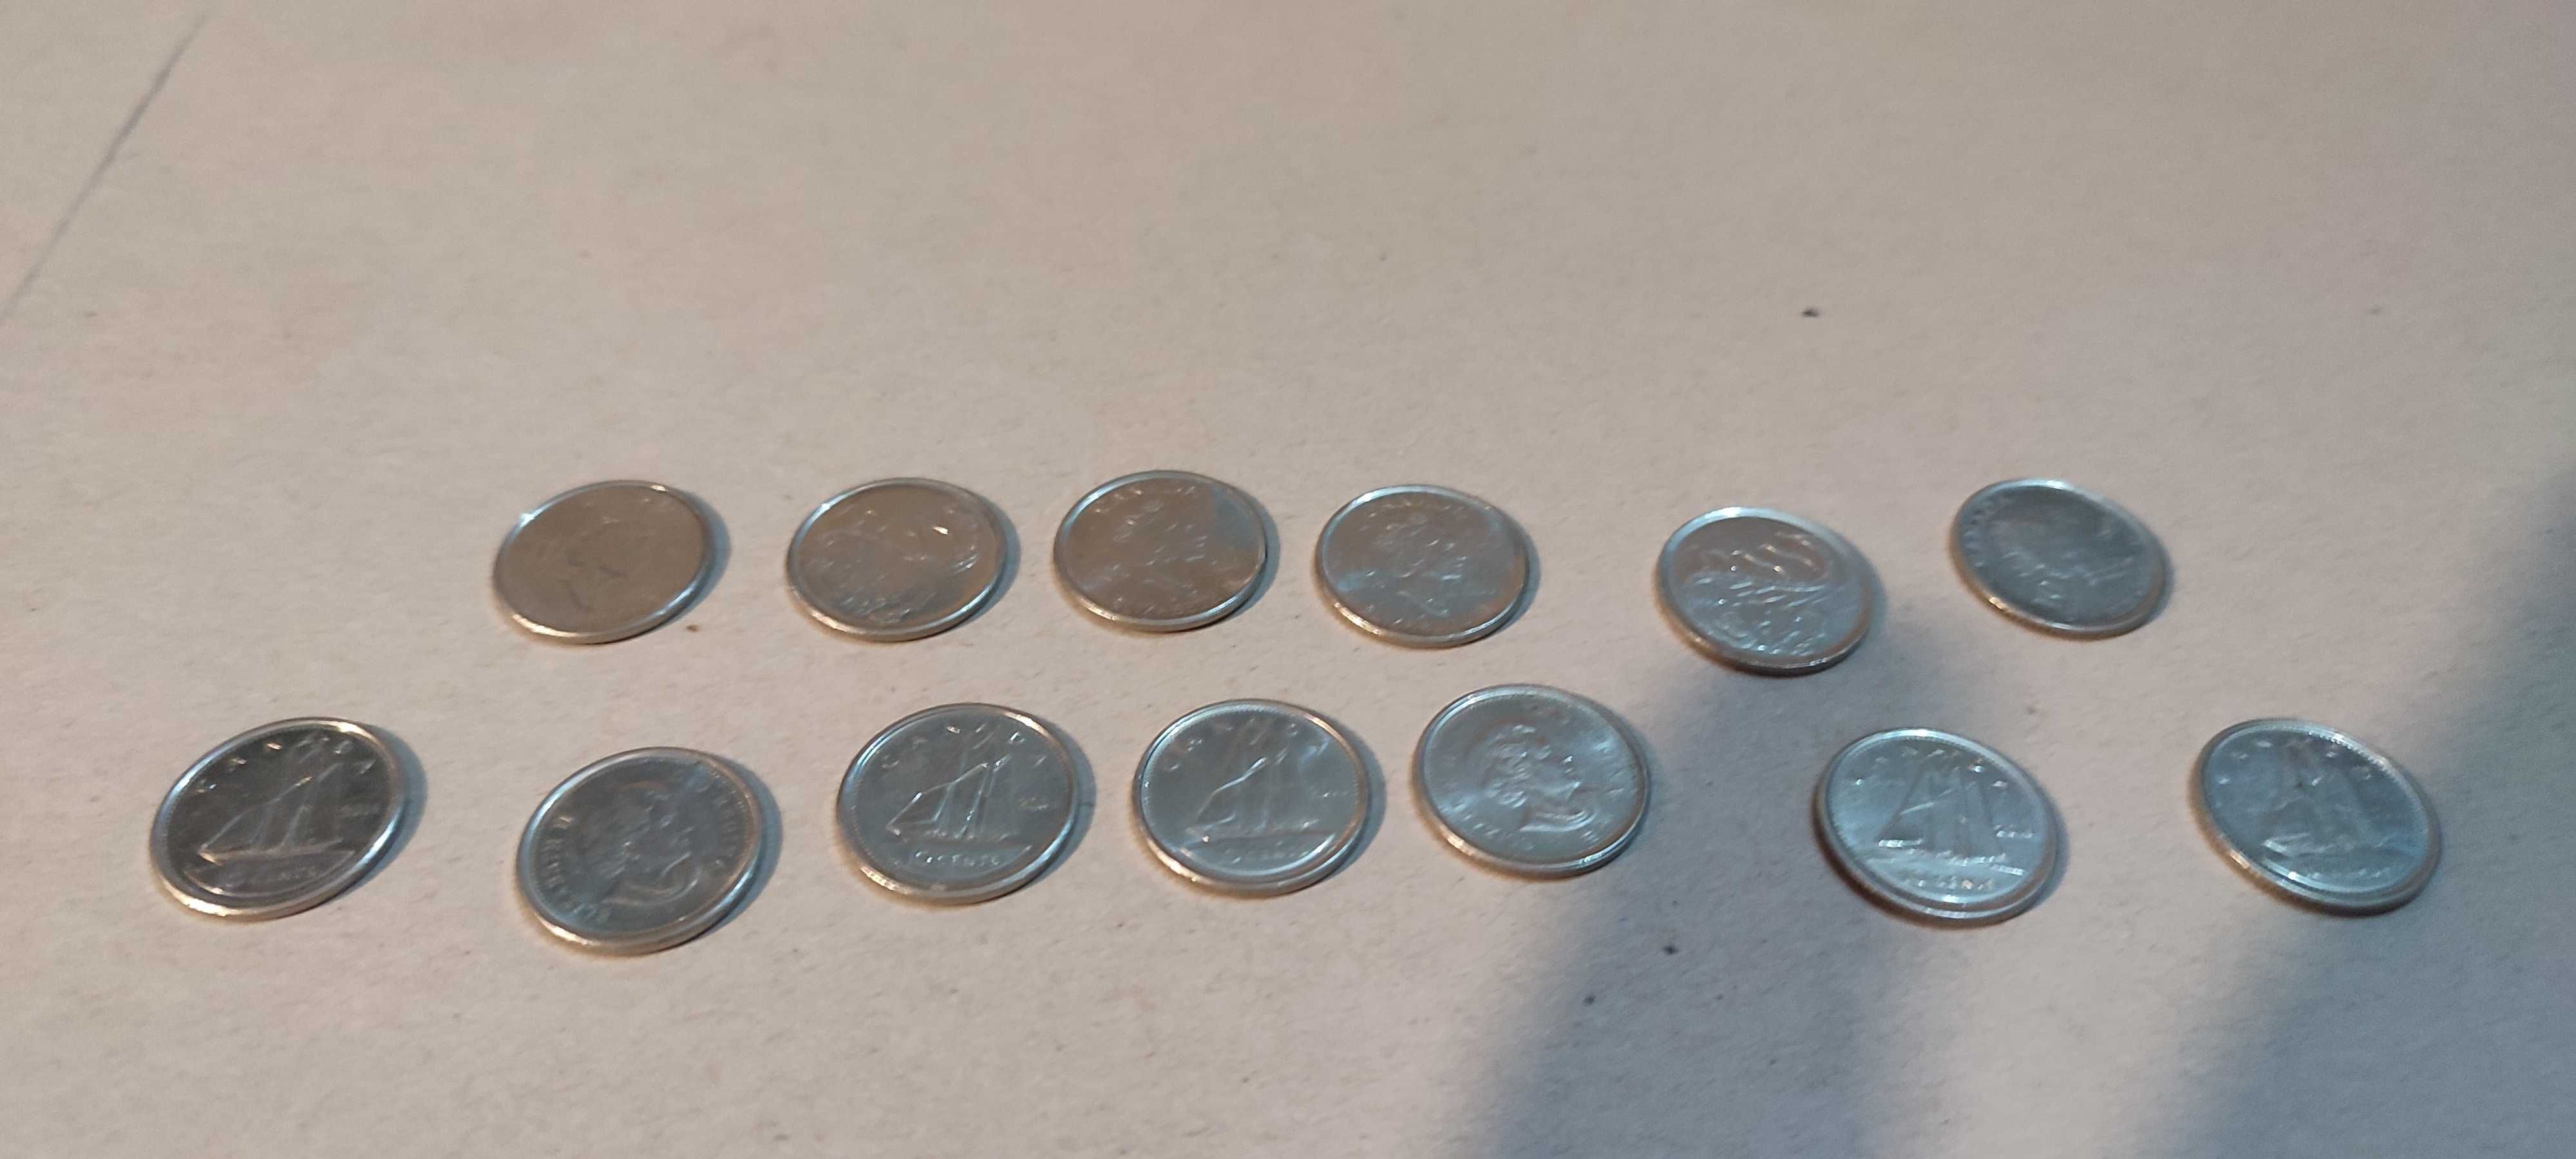 Monede Canada, unele speciale, unele comune